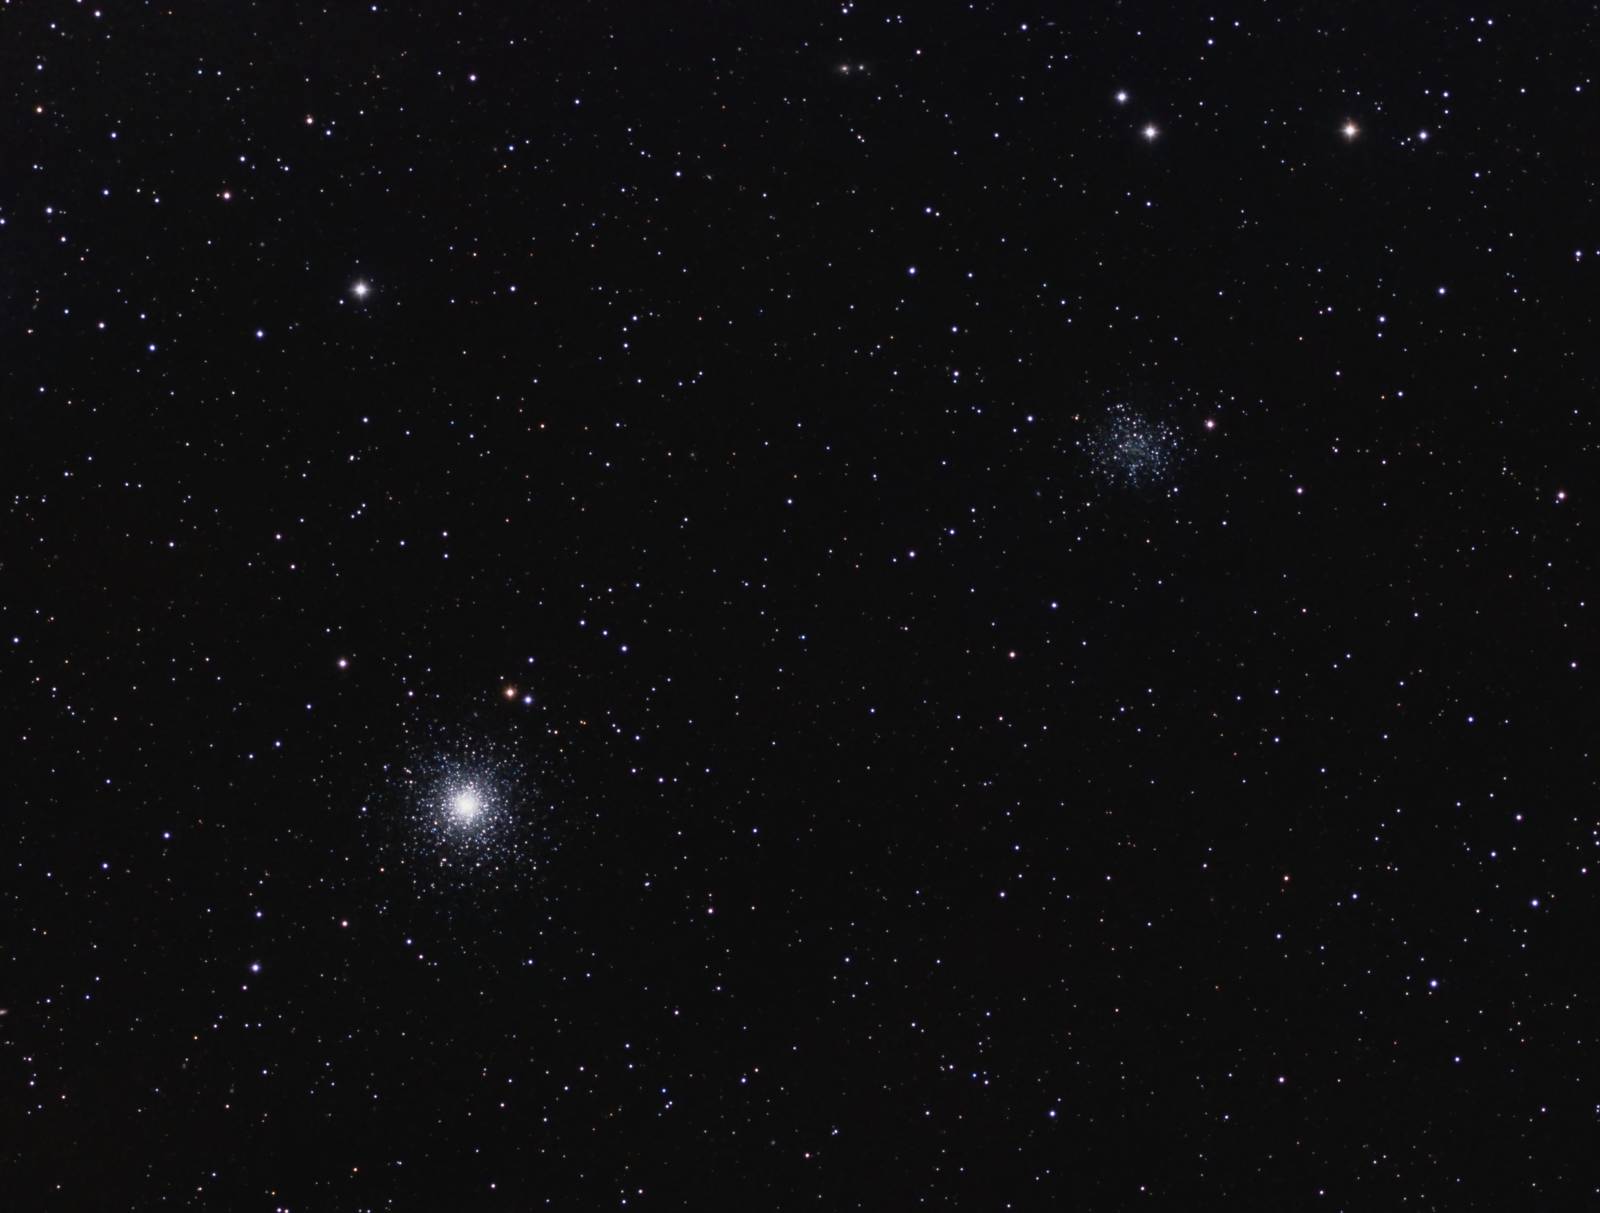 M53 and NGC5053